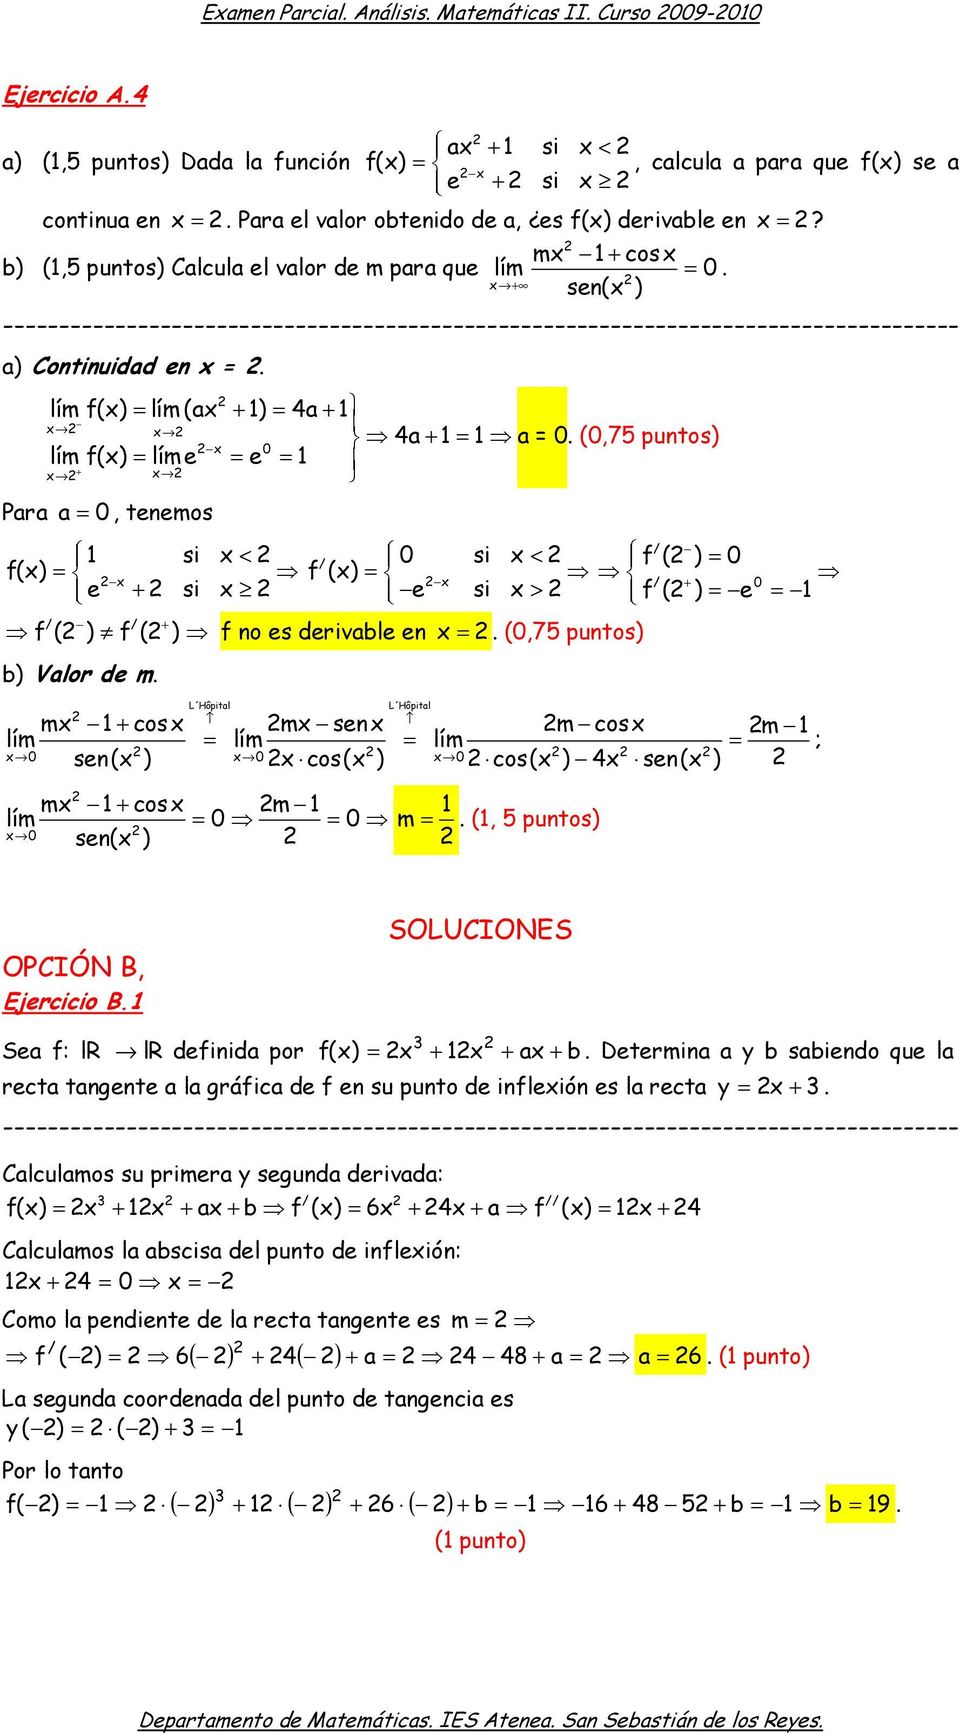 (0,75 puntos) f() e e 1 f() (a 1) 4a 1 0 + Para a 0, tenemos 1 < 0 < f ( ) 0 f() f () e + e > + 0 f ( ) e + f ( ) f ( ) f no es derivable en b) Valor de m.